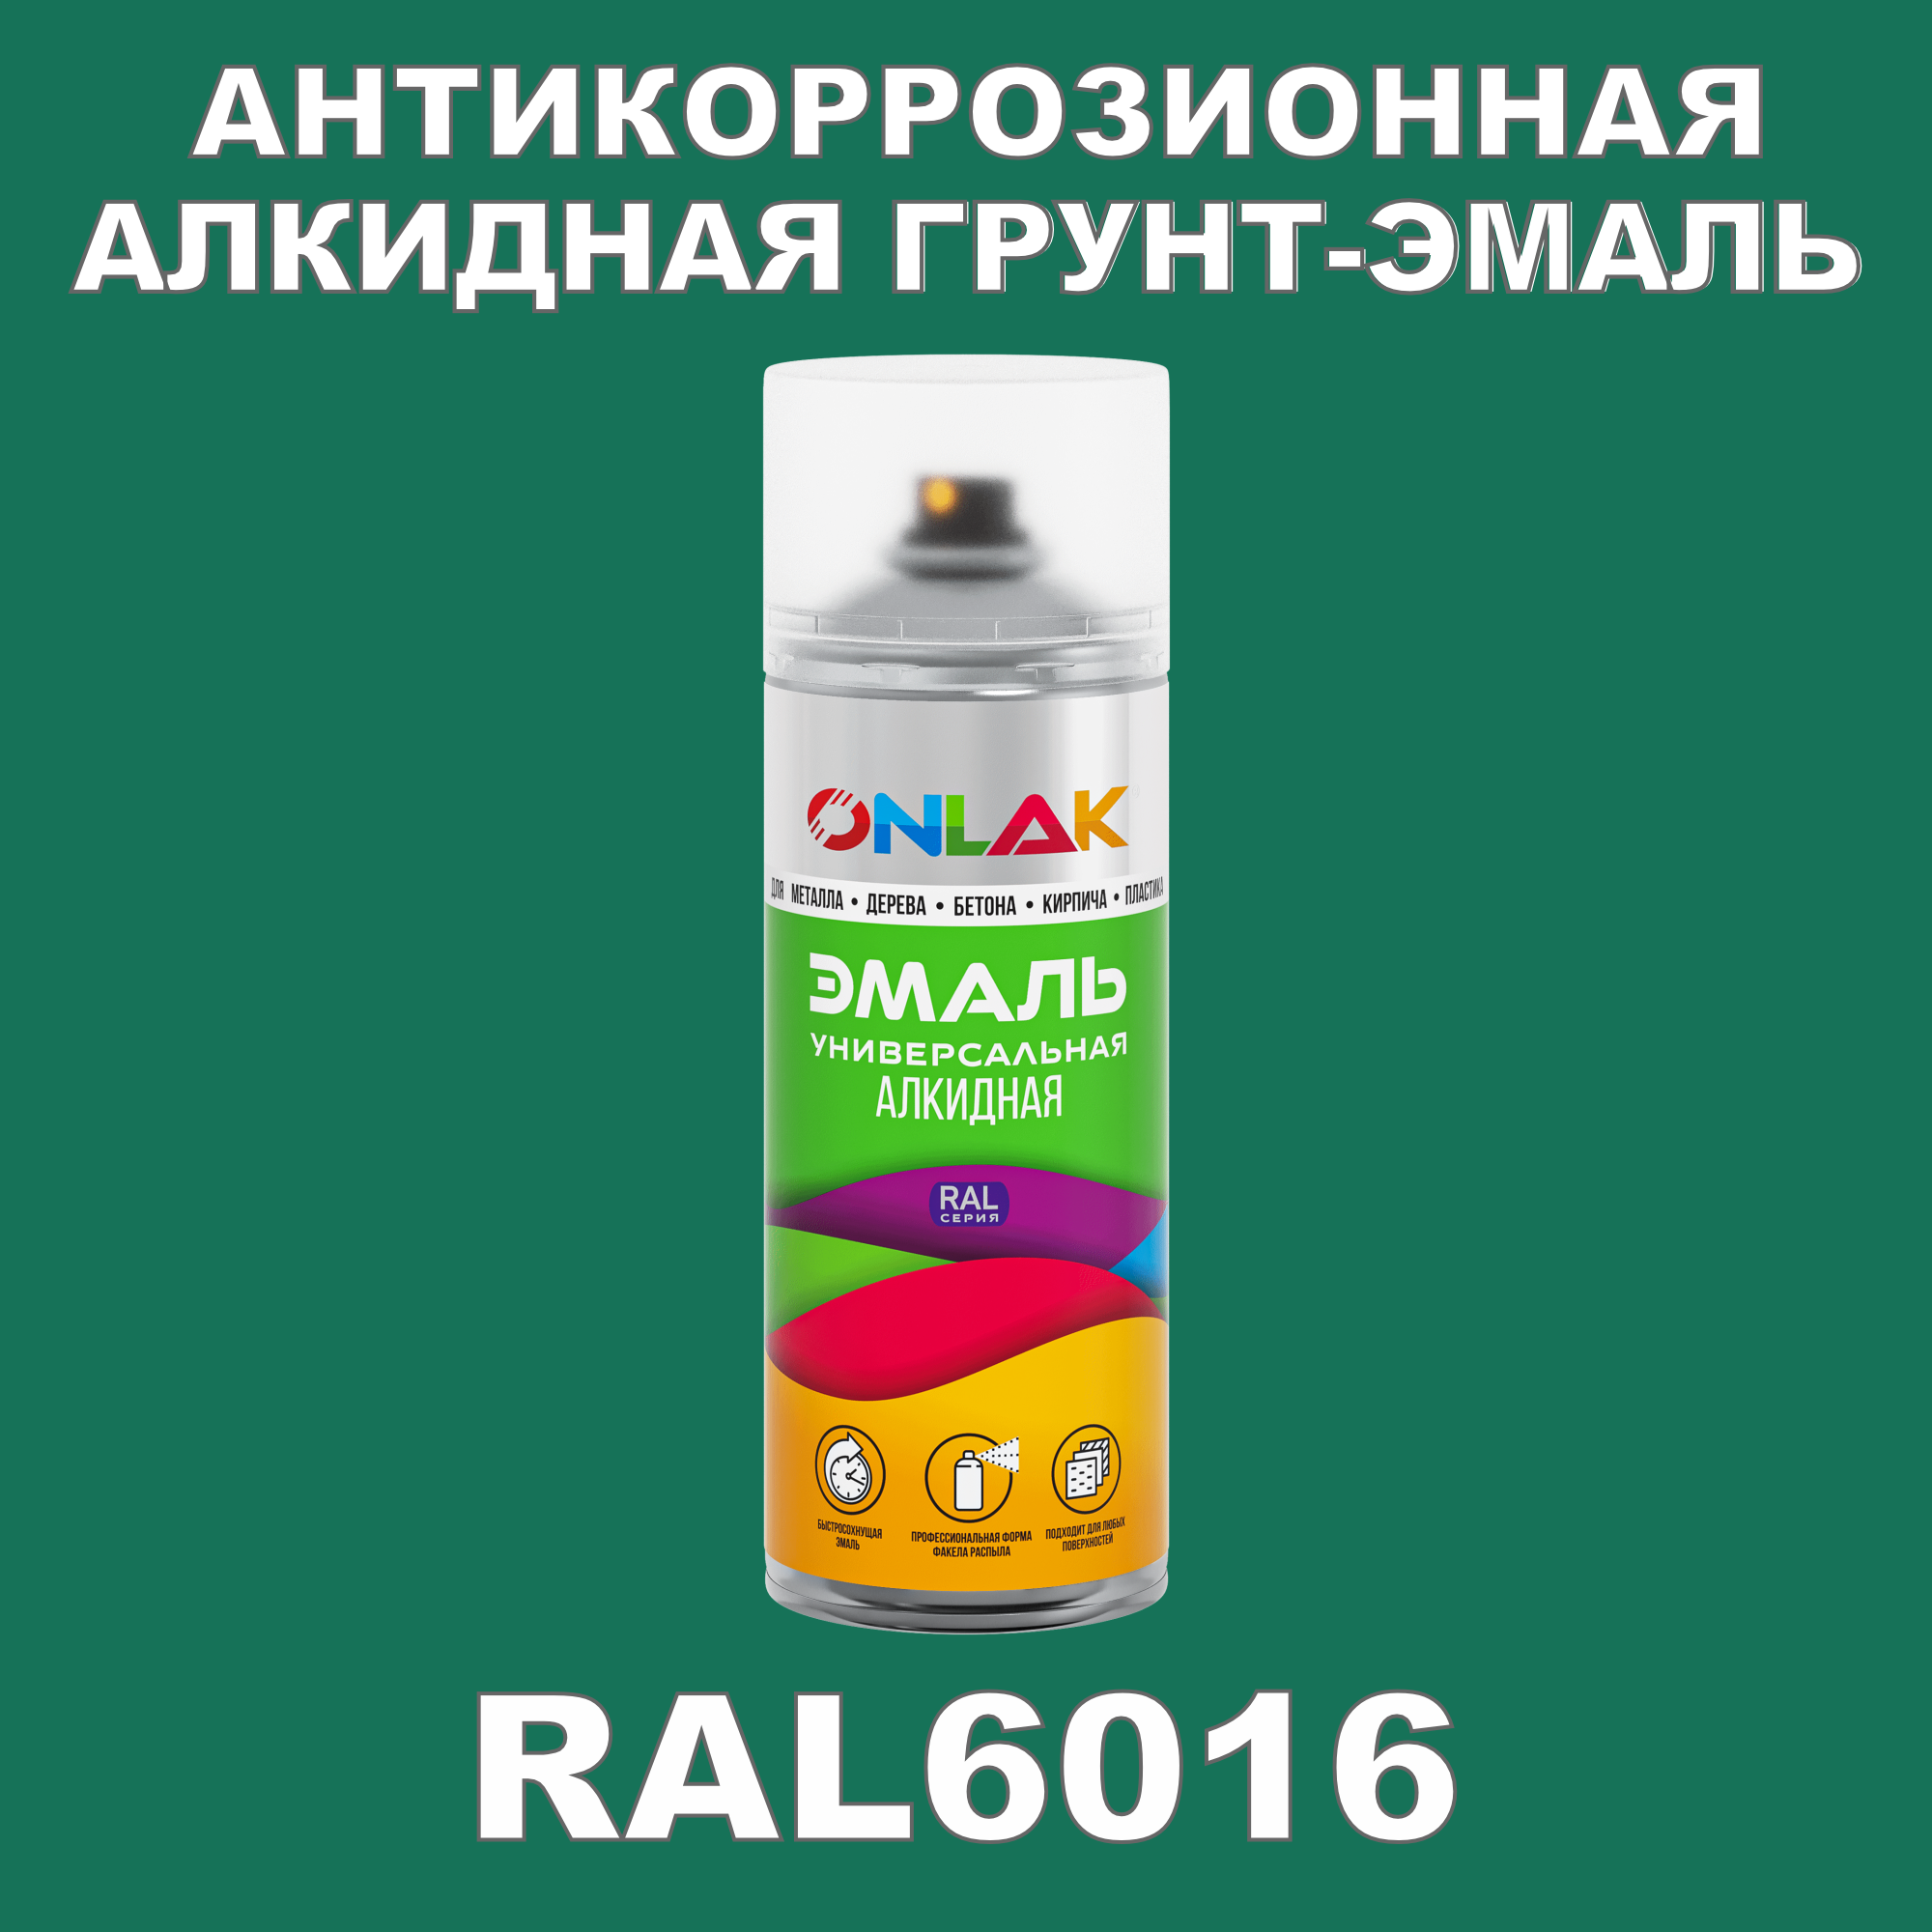 Антикоррозионная грунт-эмаль ONLAK RAL 6016,зеленый,697 мл рюкзак отдел на молнии 2 наружных кармана зеленый